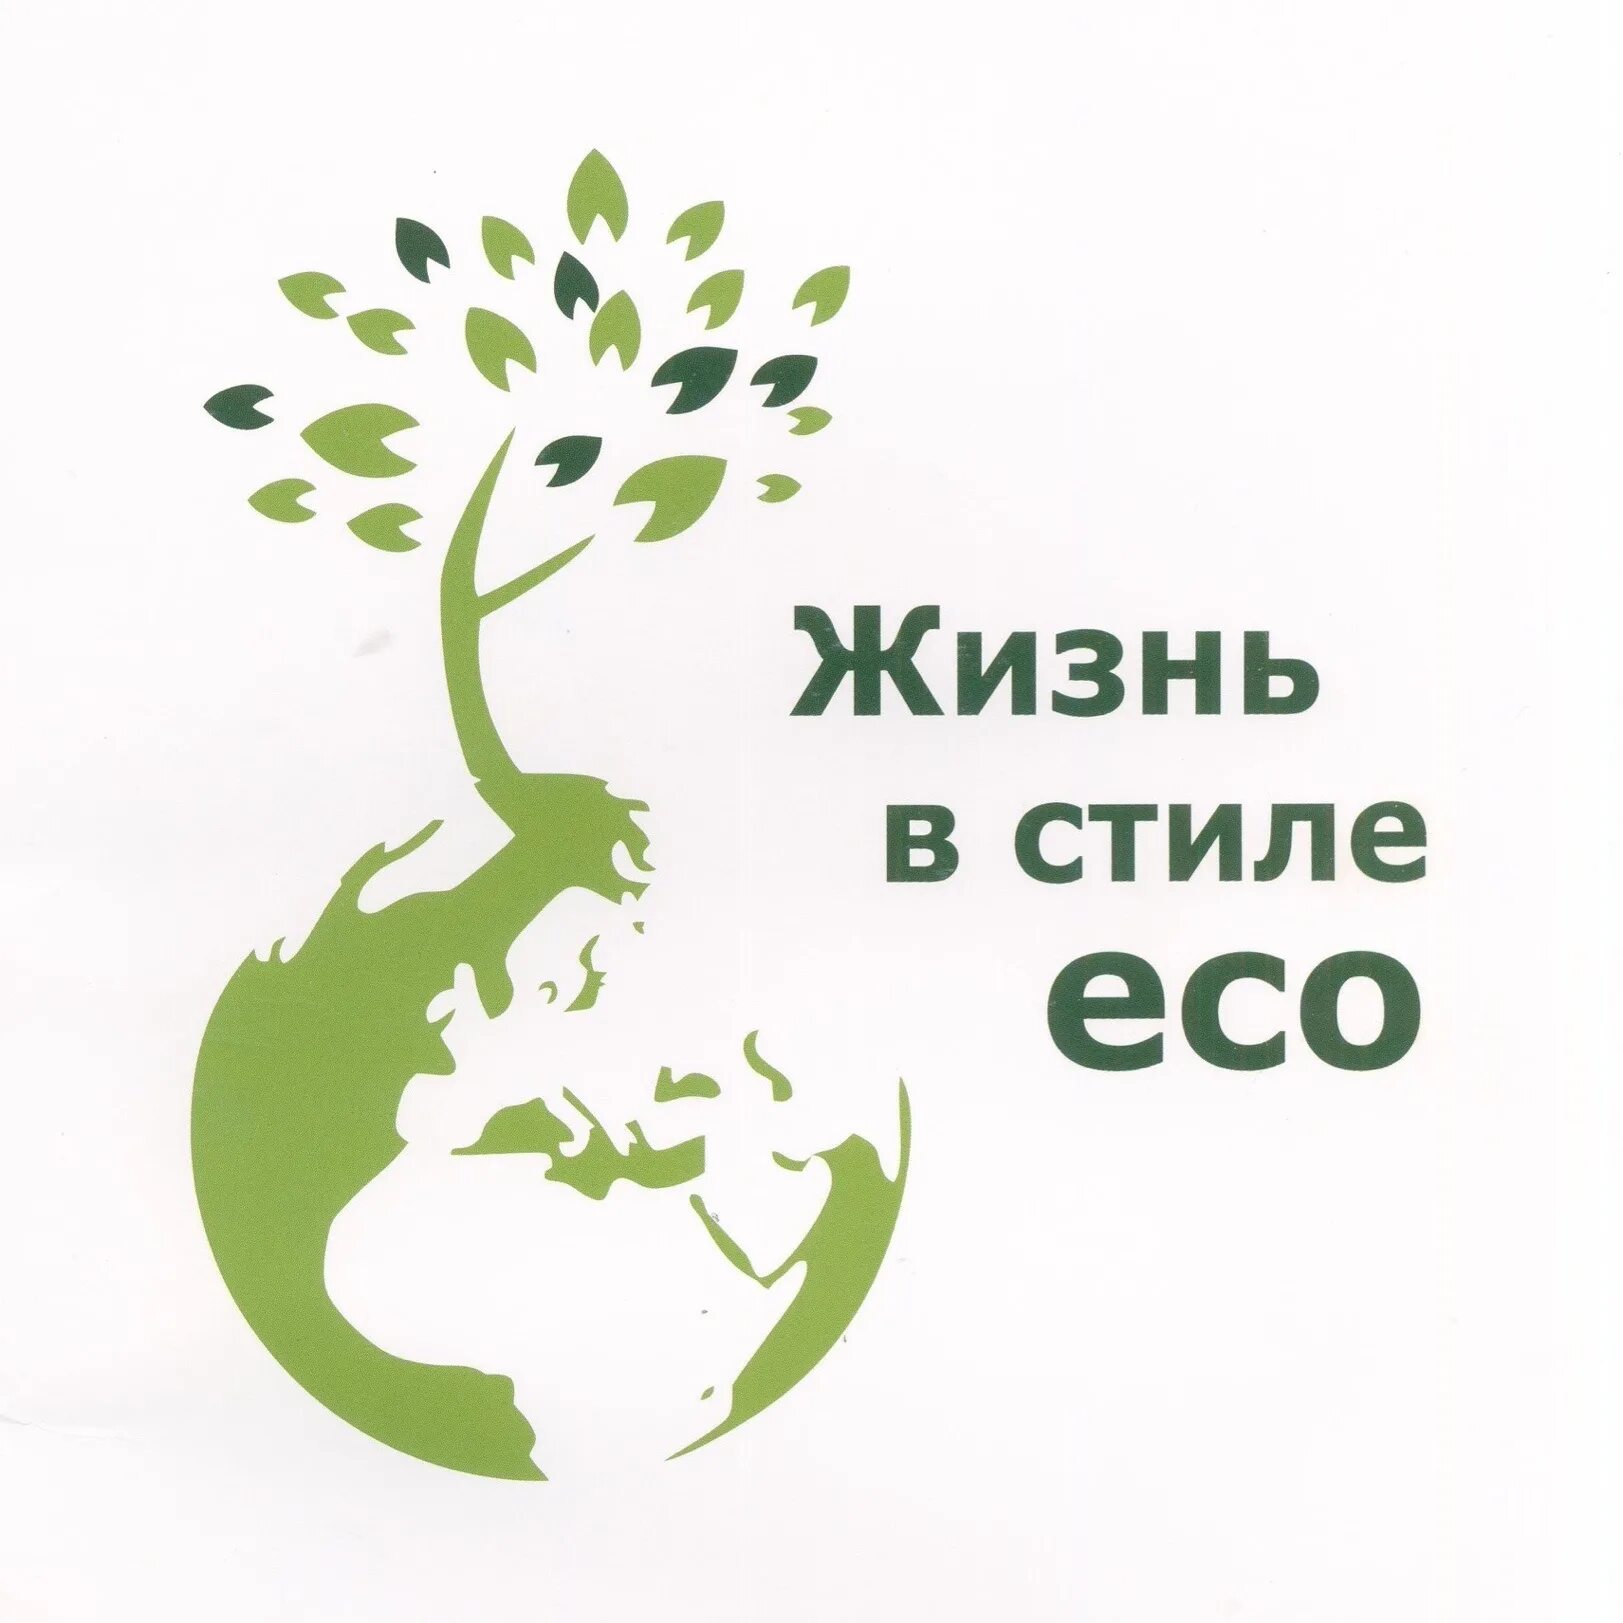 Ecology life. Жизнь в стиле эко. Экологические лозунги. Эко экология. Жить в стиле эко.